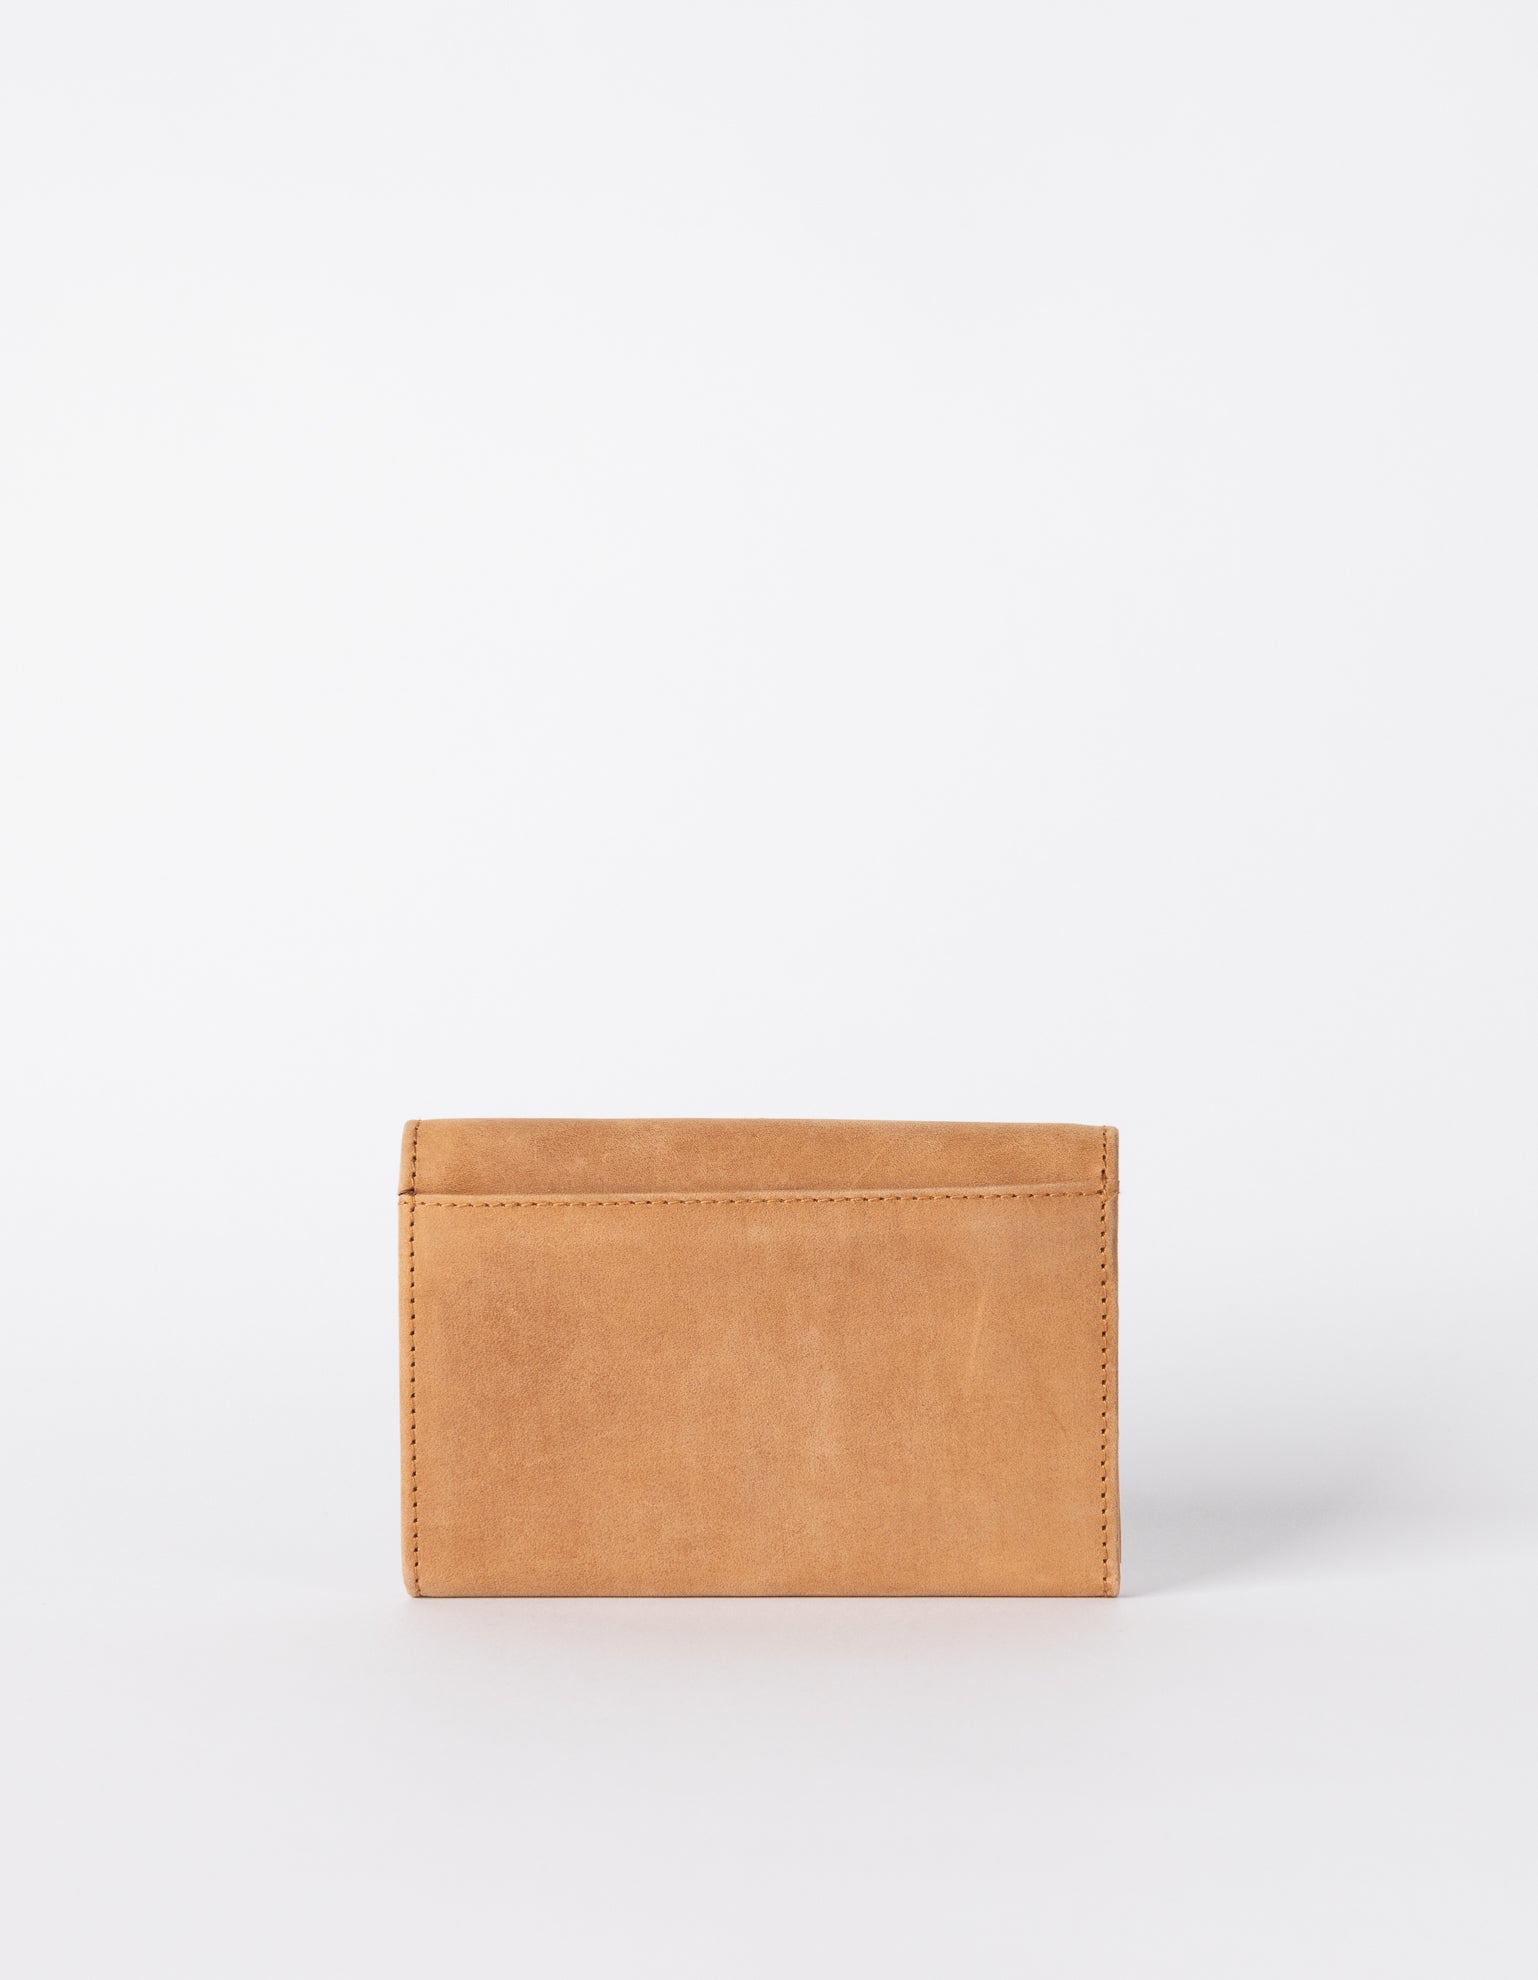 Camel Leather purse. Back product image